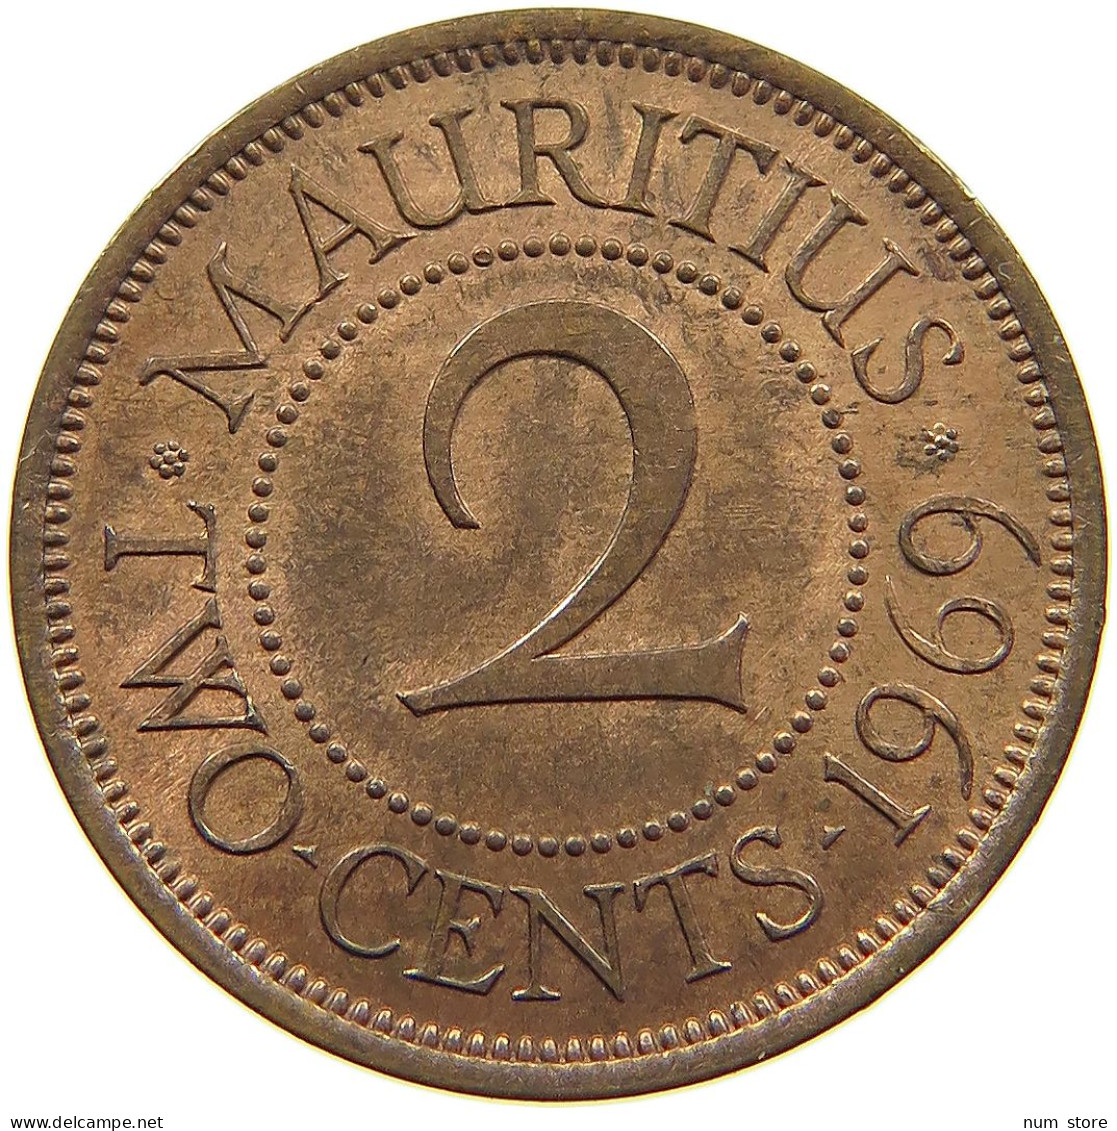 MAURITIUS 2 CENTS 1969 Elizabeth II. (1952-2022) #s062 0131 - Mauritius